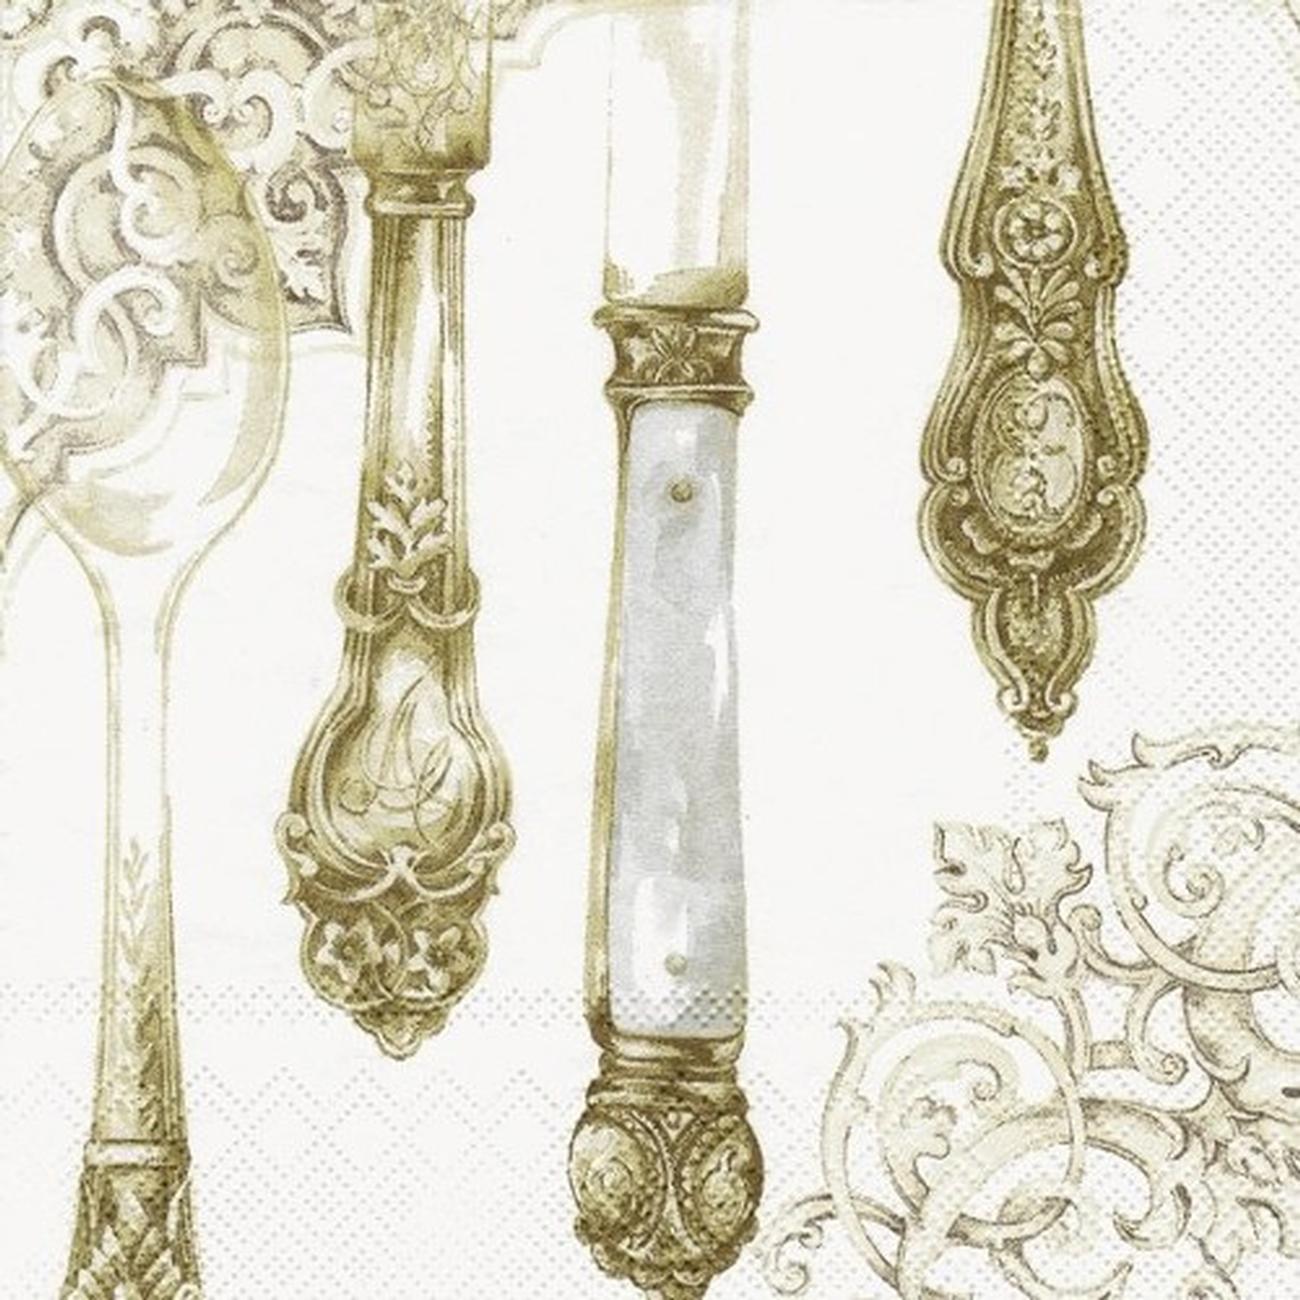 ihr-lunch-napkins-cutlery-gold - IHR Lunch Napkins Cutlery Gold